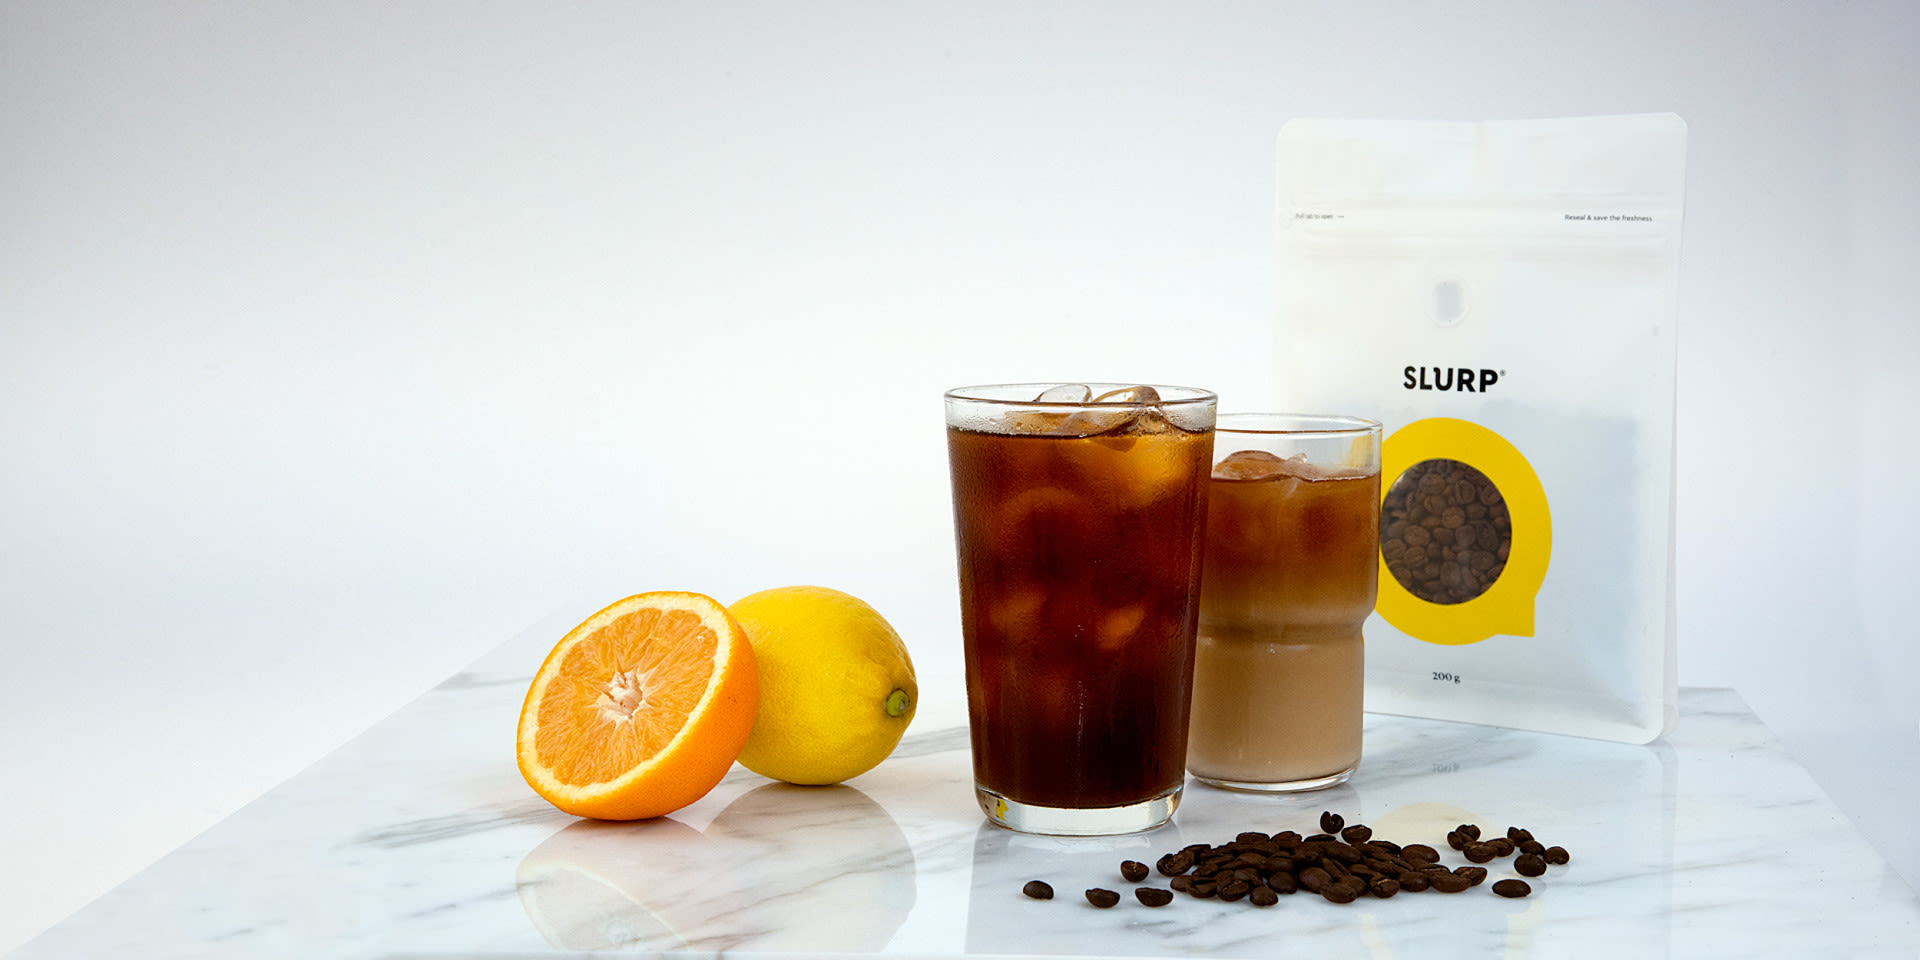 SLURP-iced-coffee-orange-lemon-2500x1250px